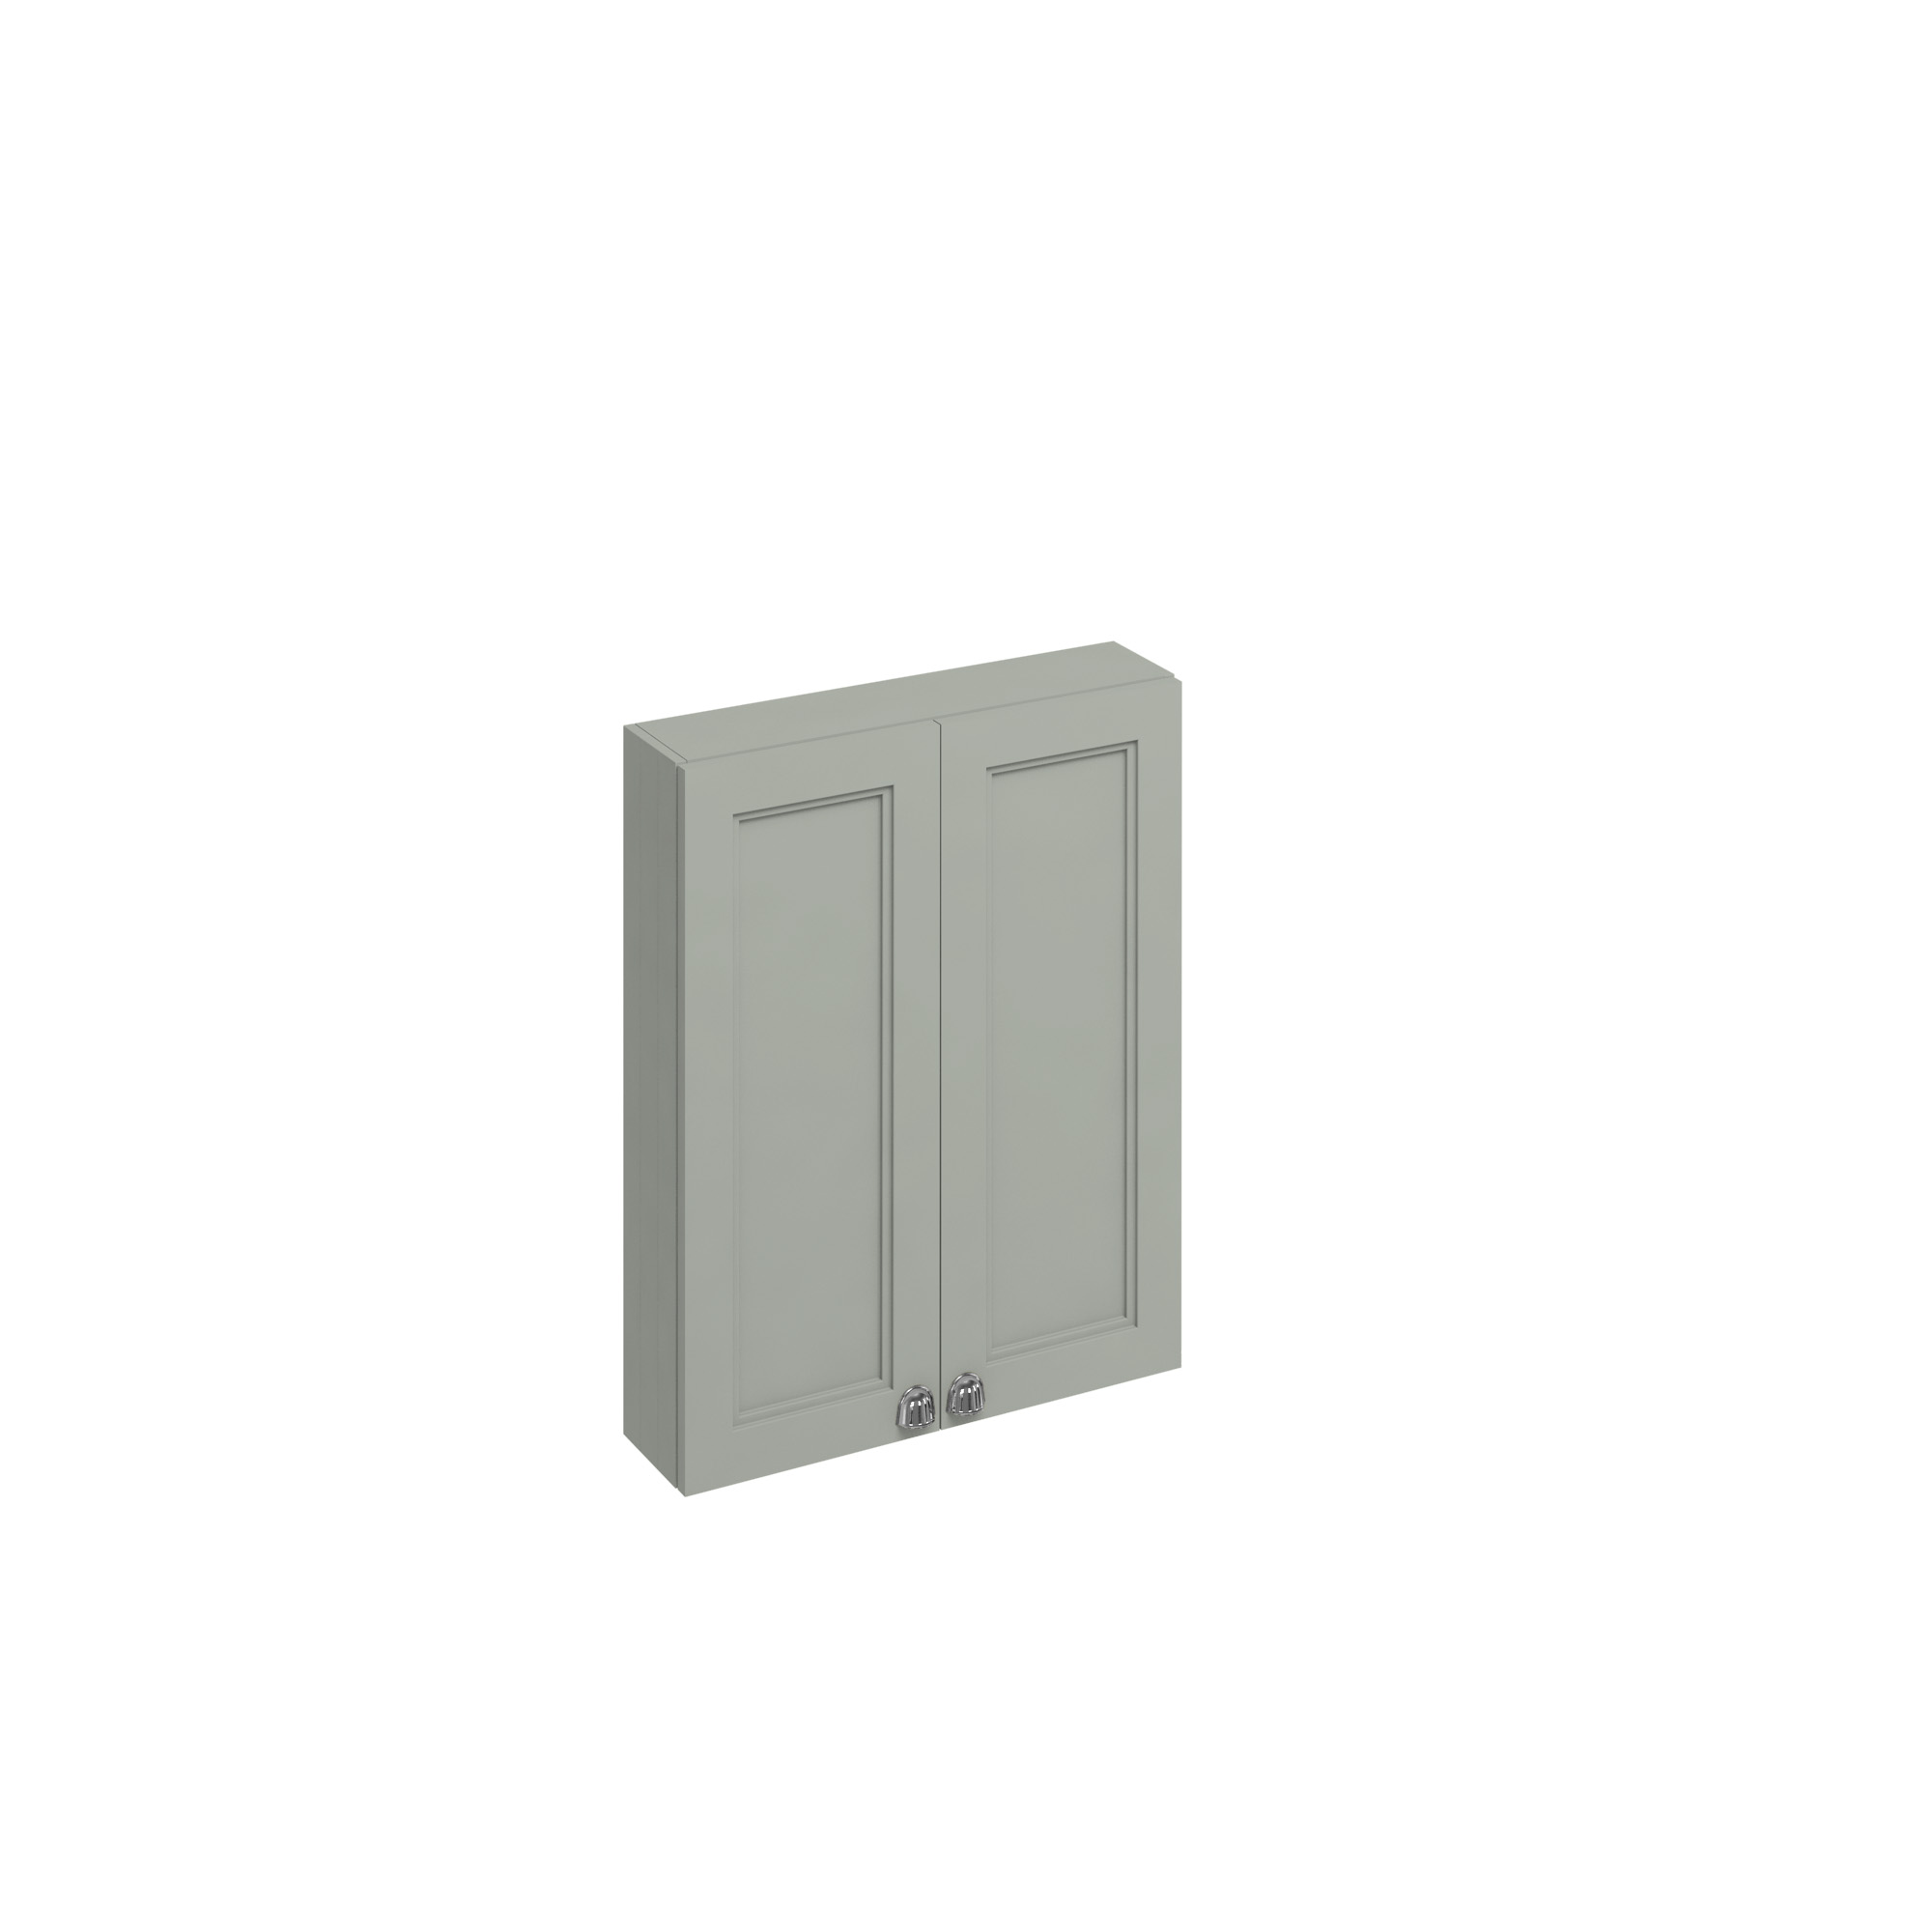 60cm double door wall unit